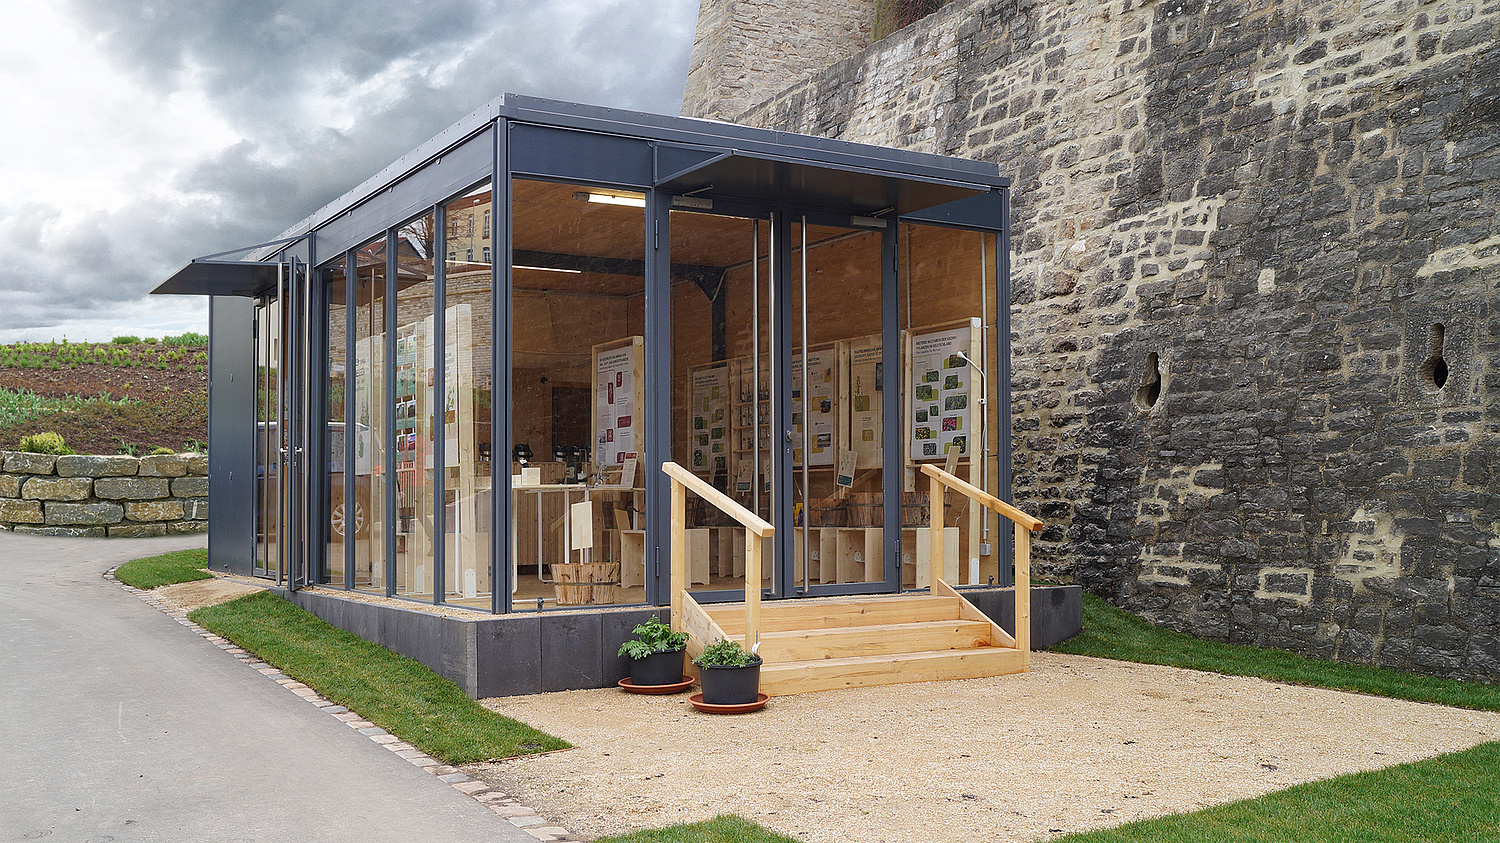 Ein temporärer Glaspavillon beherbergt die Ausstellung. (© Papenfuss | Atelier)